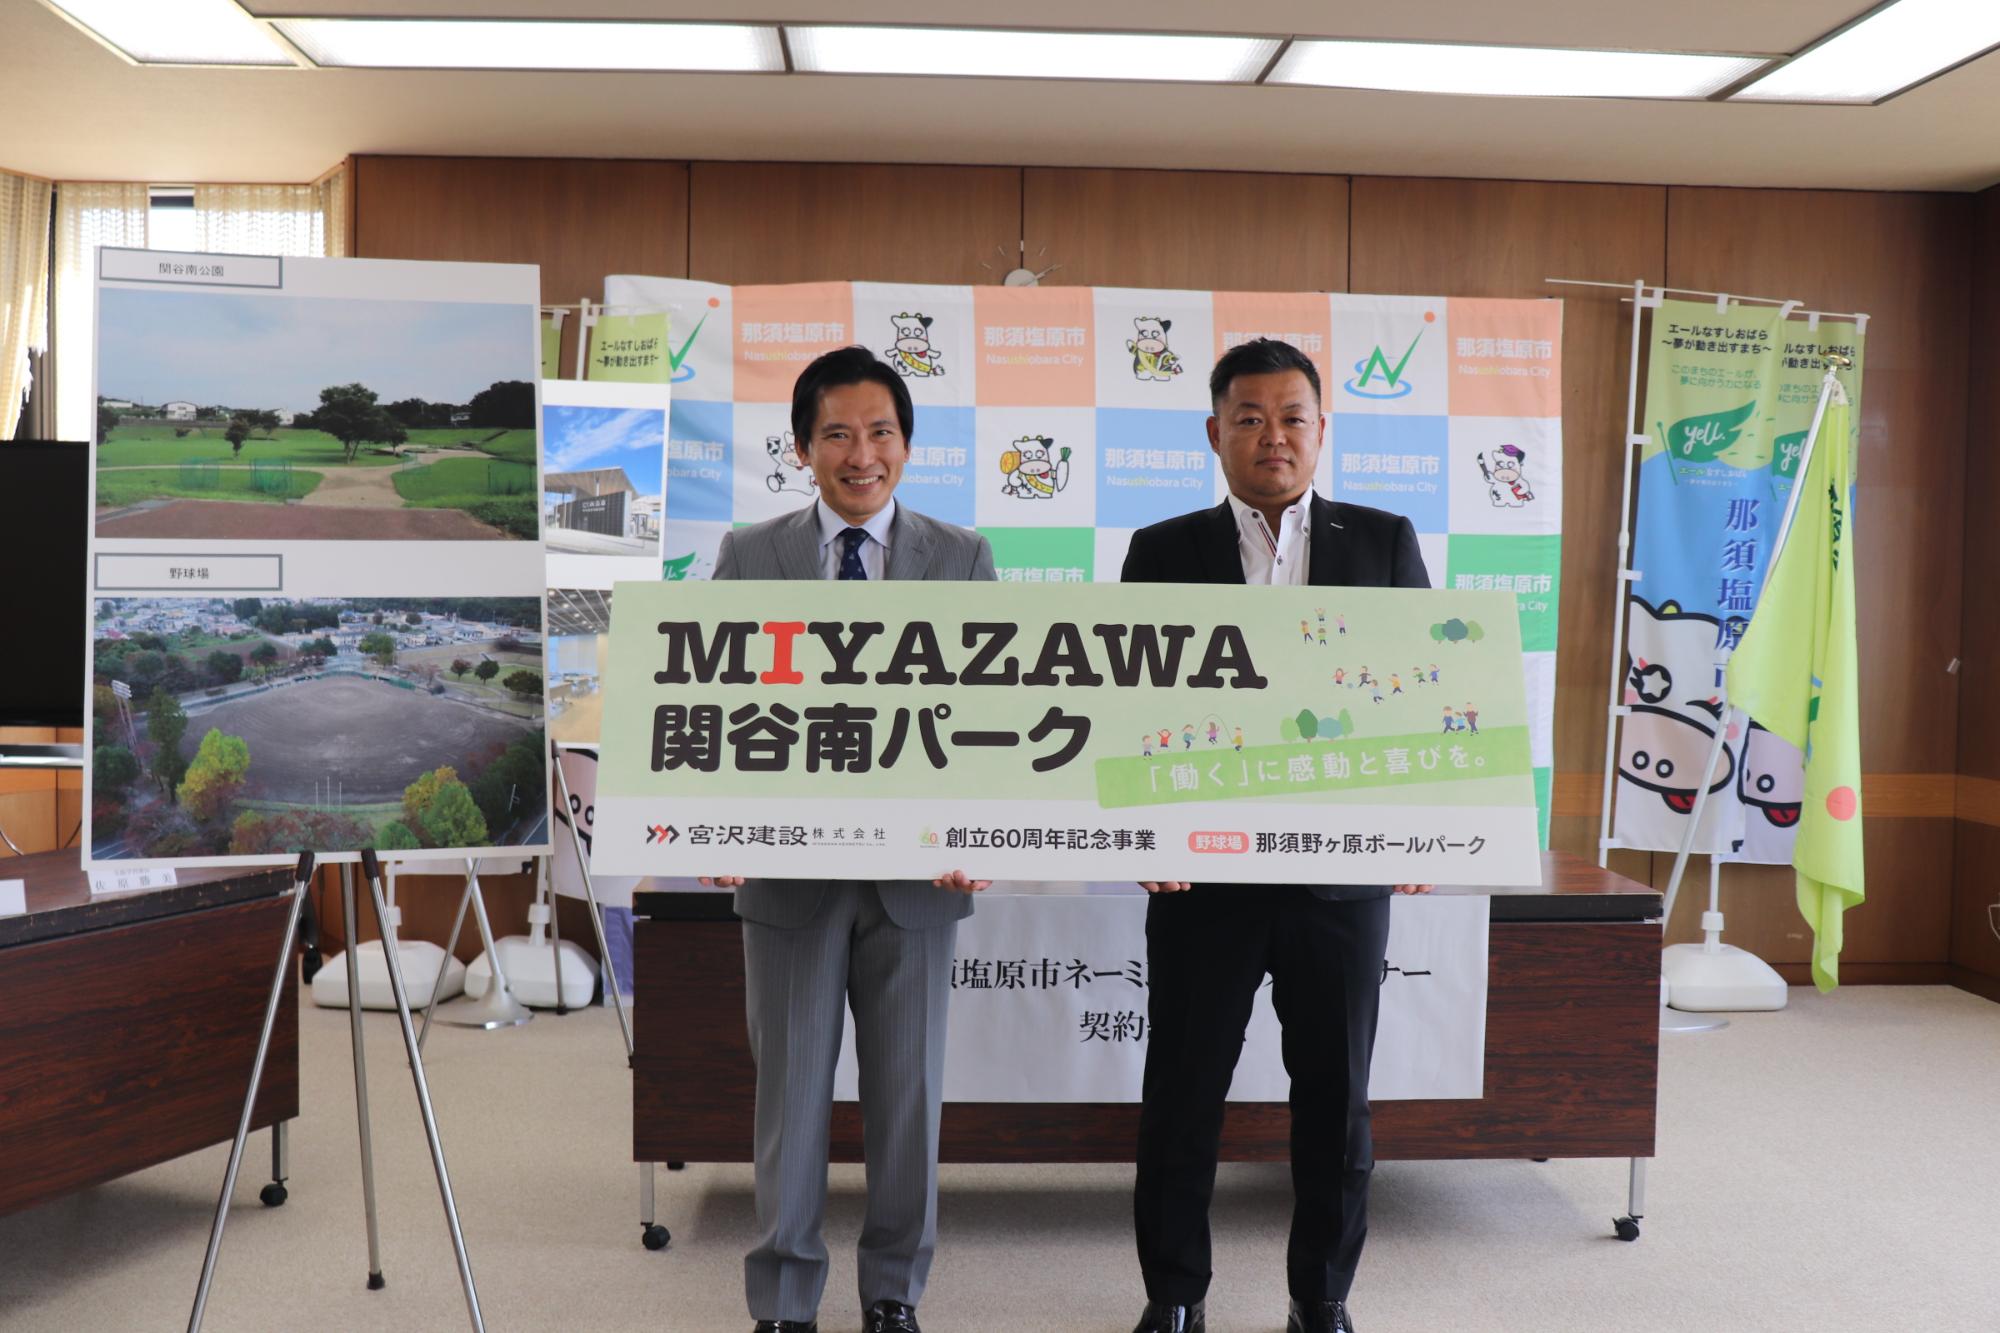 二人の男性が「MIYAZAWA関谷南パーク、那須野ヶ原ボールパーク」と書かれたプレートを持って、並んで立っている写真